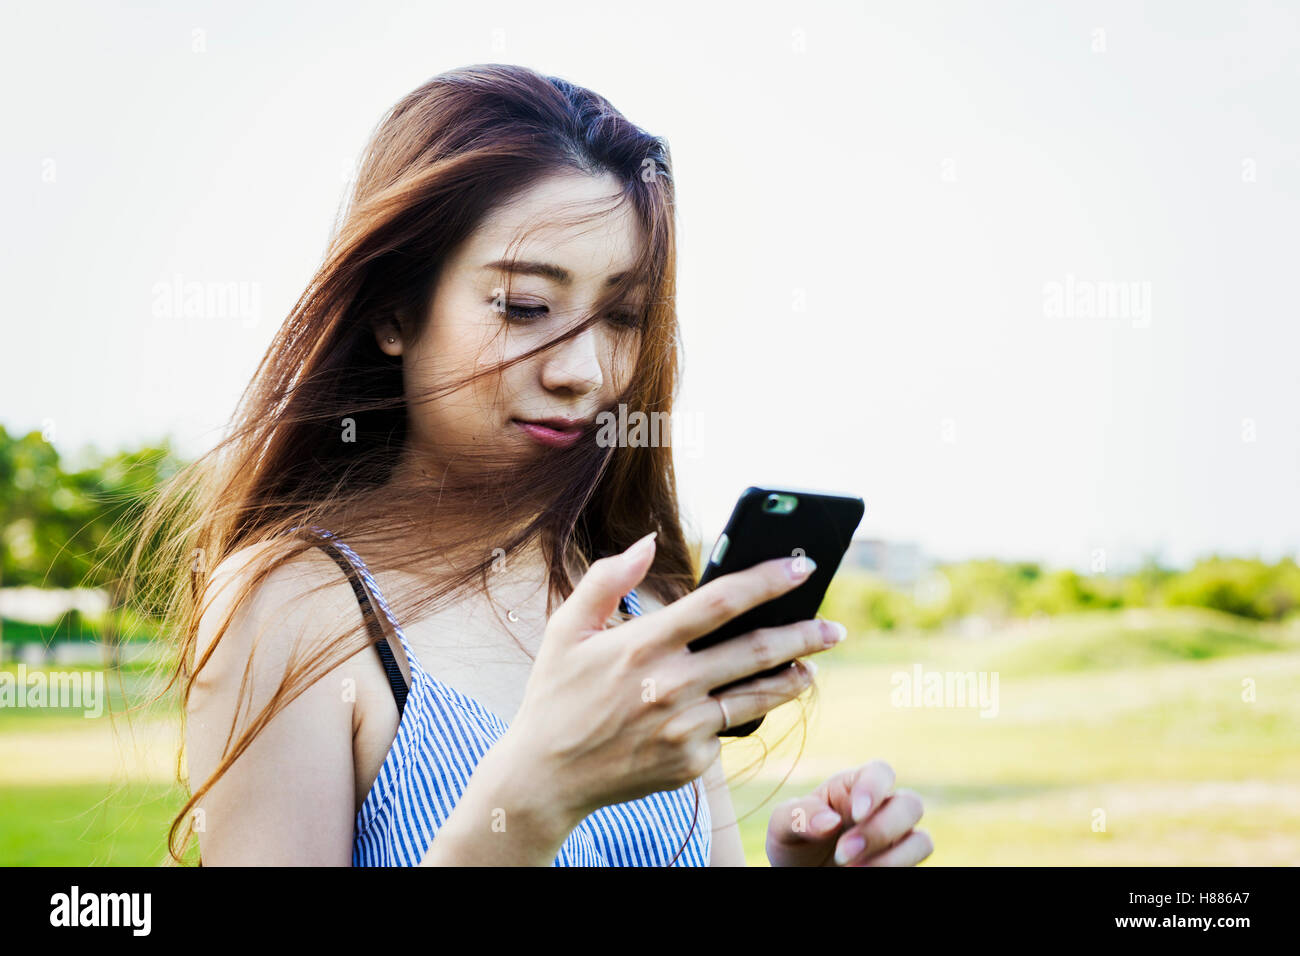 Lächelnde junge Frau mit langen braunen Haaren, halten eines Handys. Stockfoto